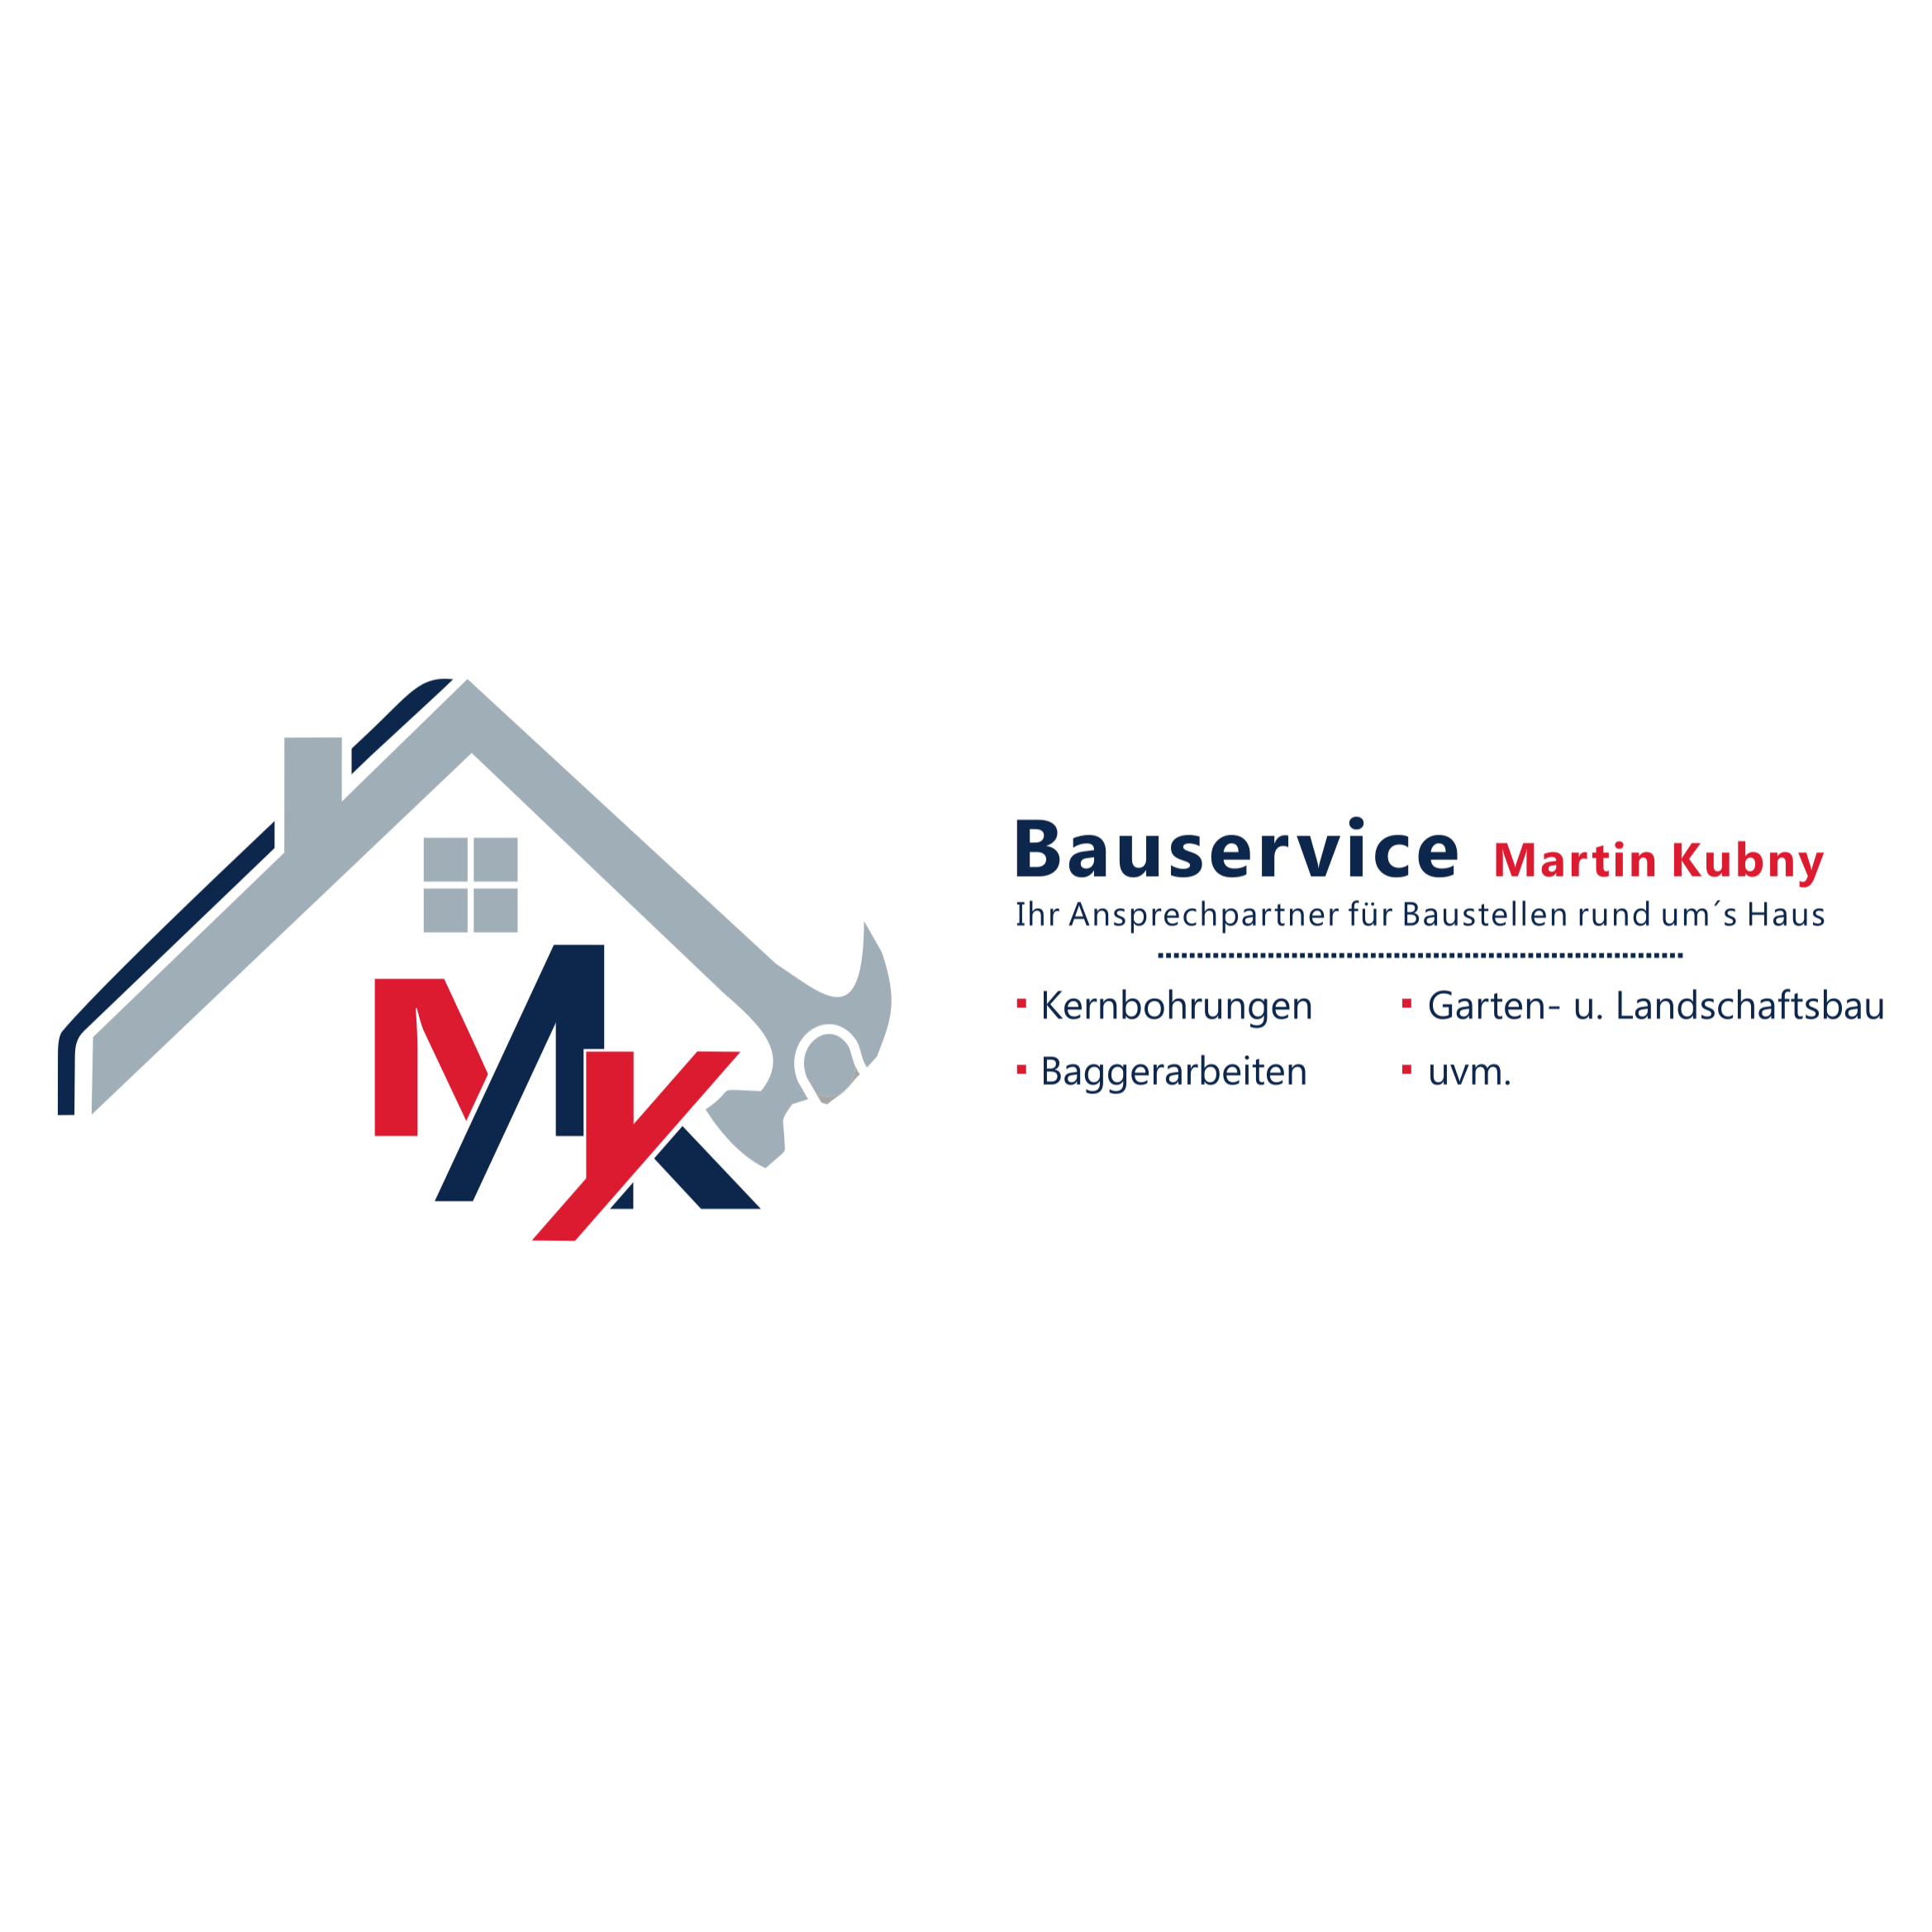 Bauservice Martin Kubny - Gartenbau, Landschaftsbau, Pflasterarbeiten, Baggerarbeiten, Kernbohrungen, Montageservice in Pemfling - Logo